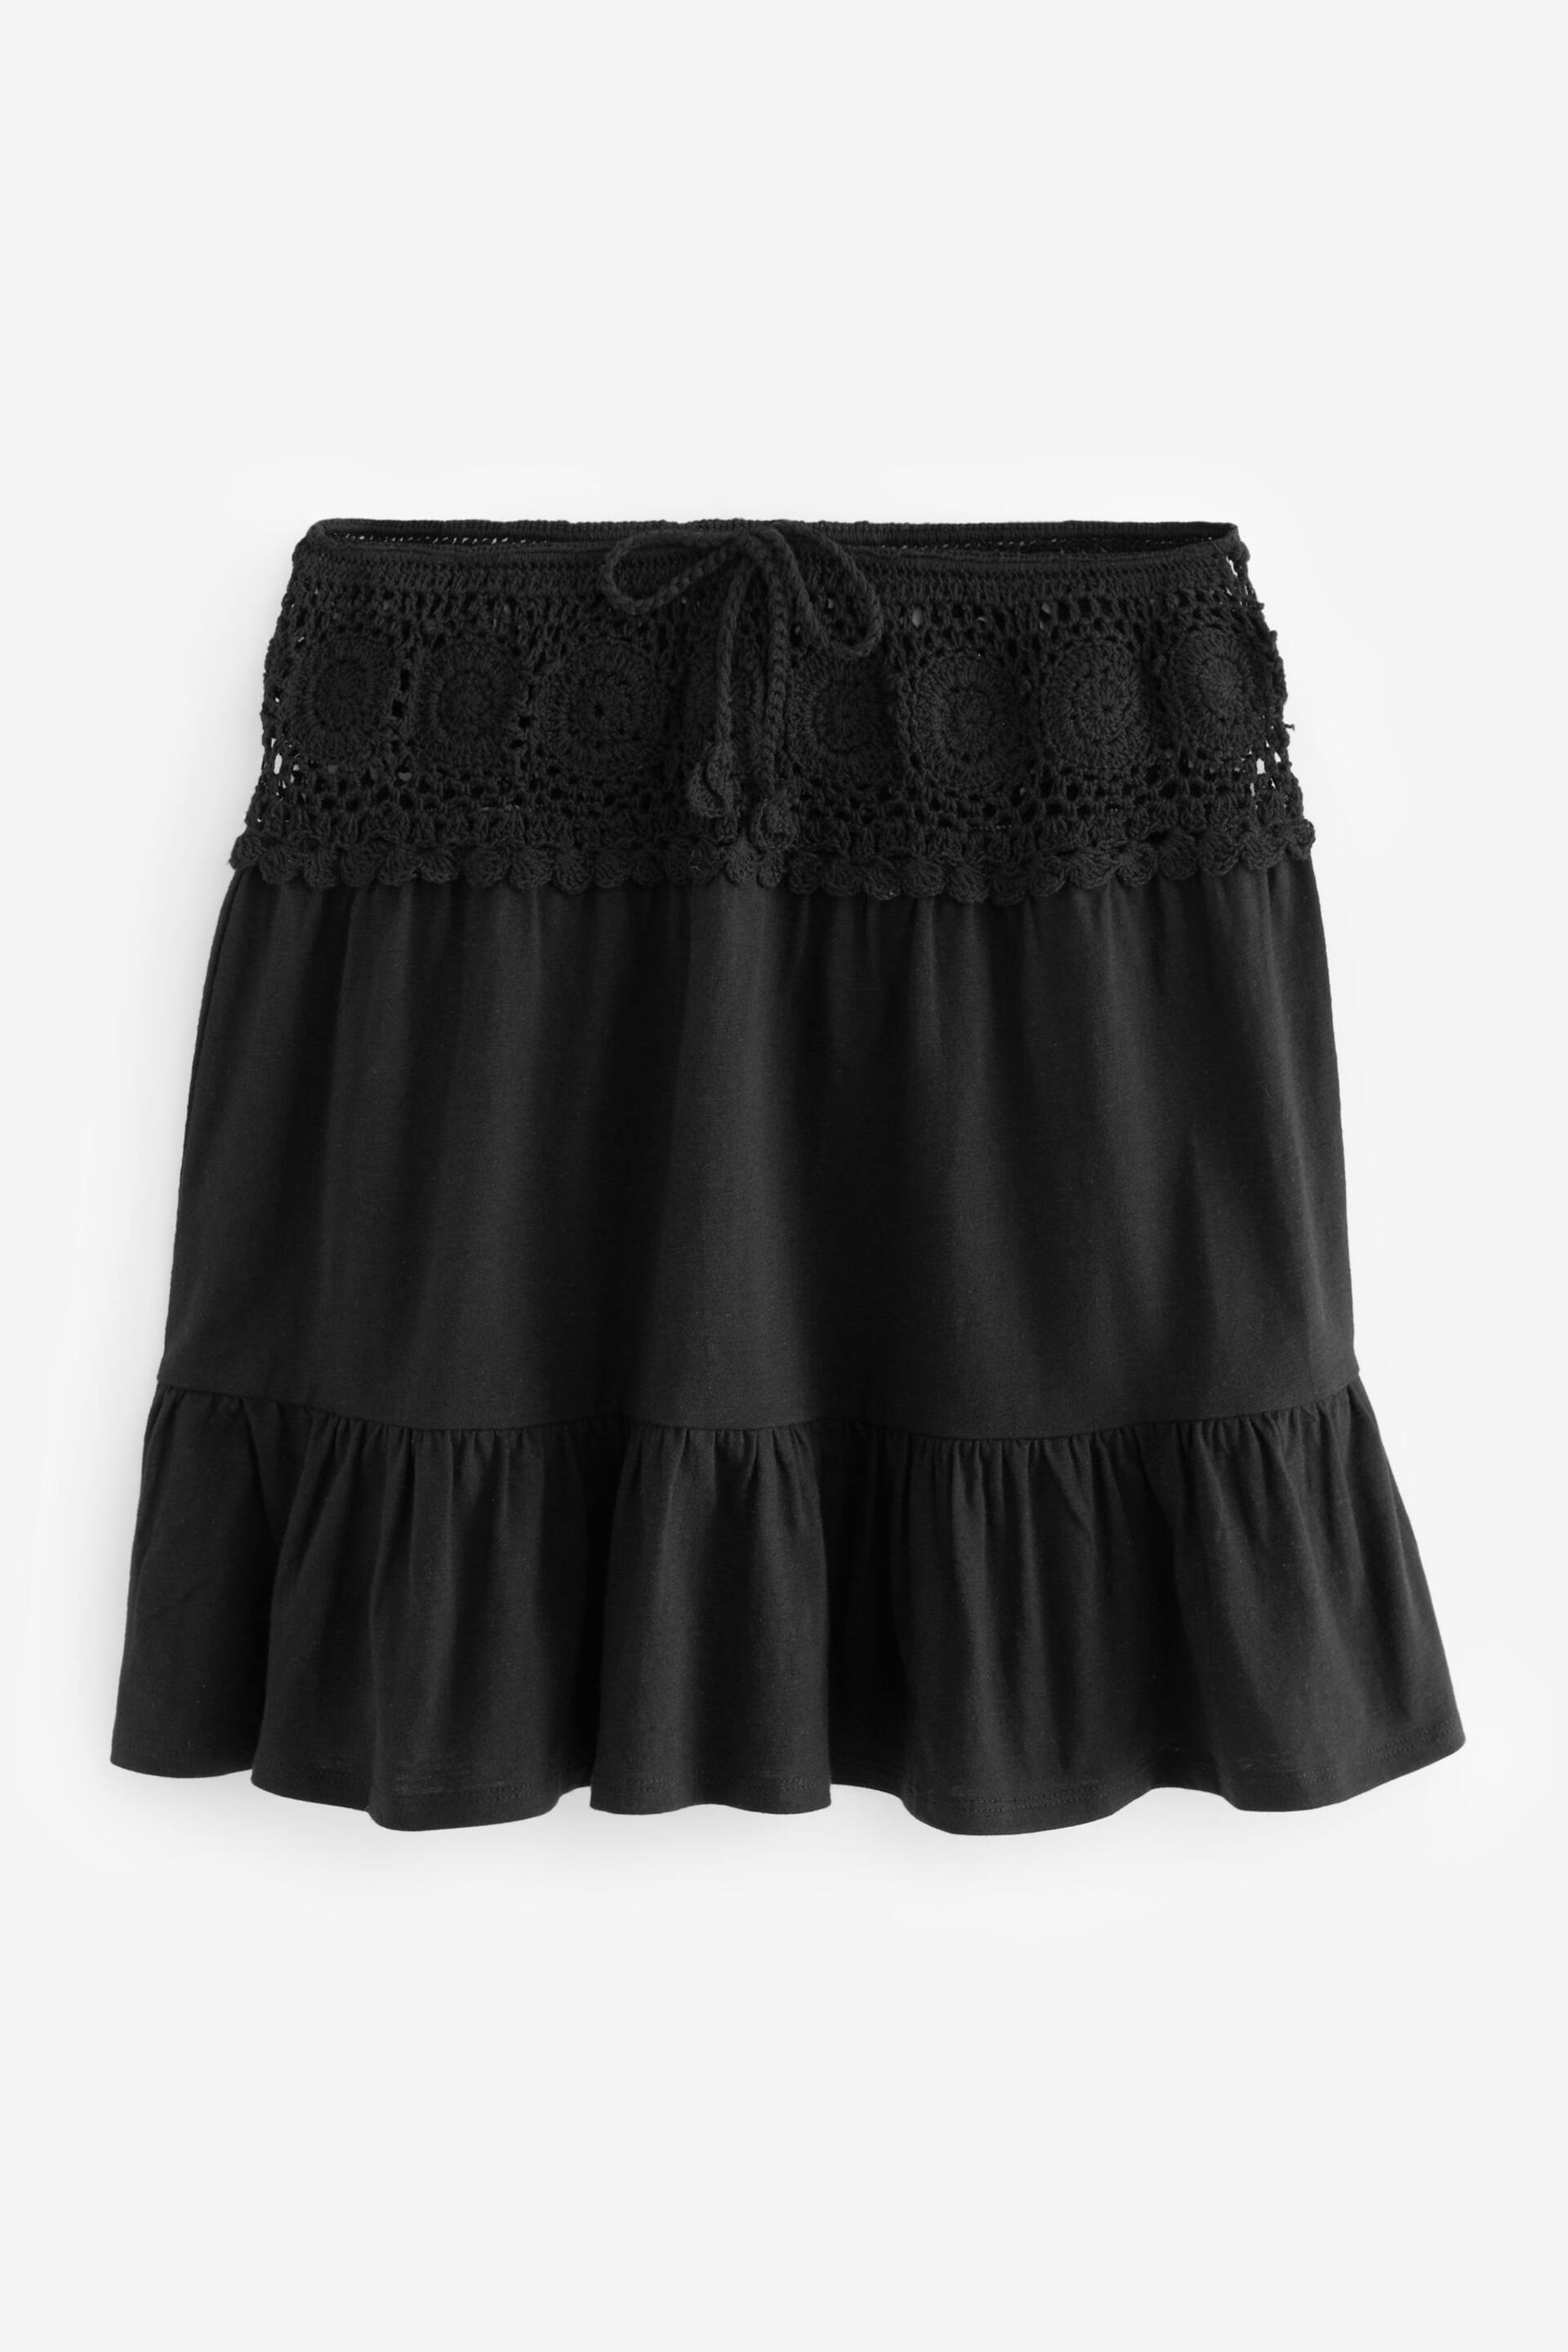 Black Crochet Mini Skirt - Image 5 of 6